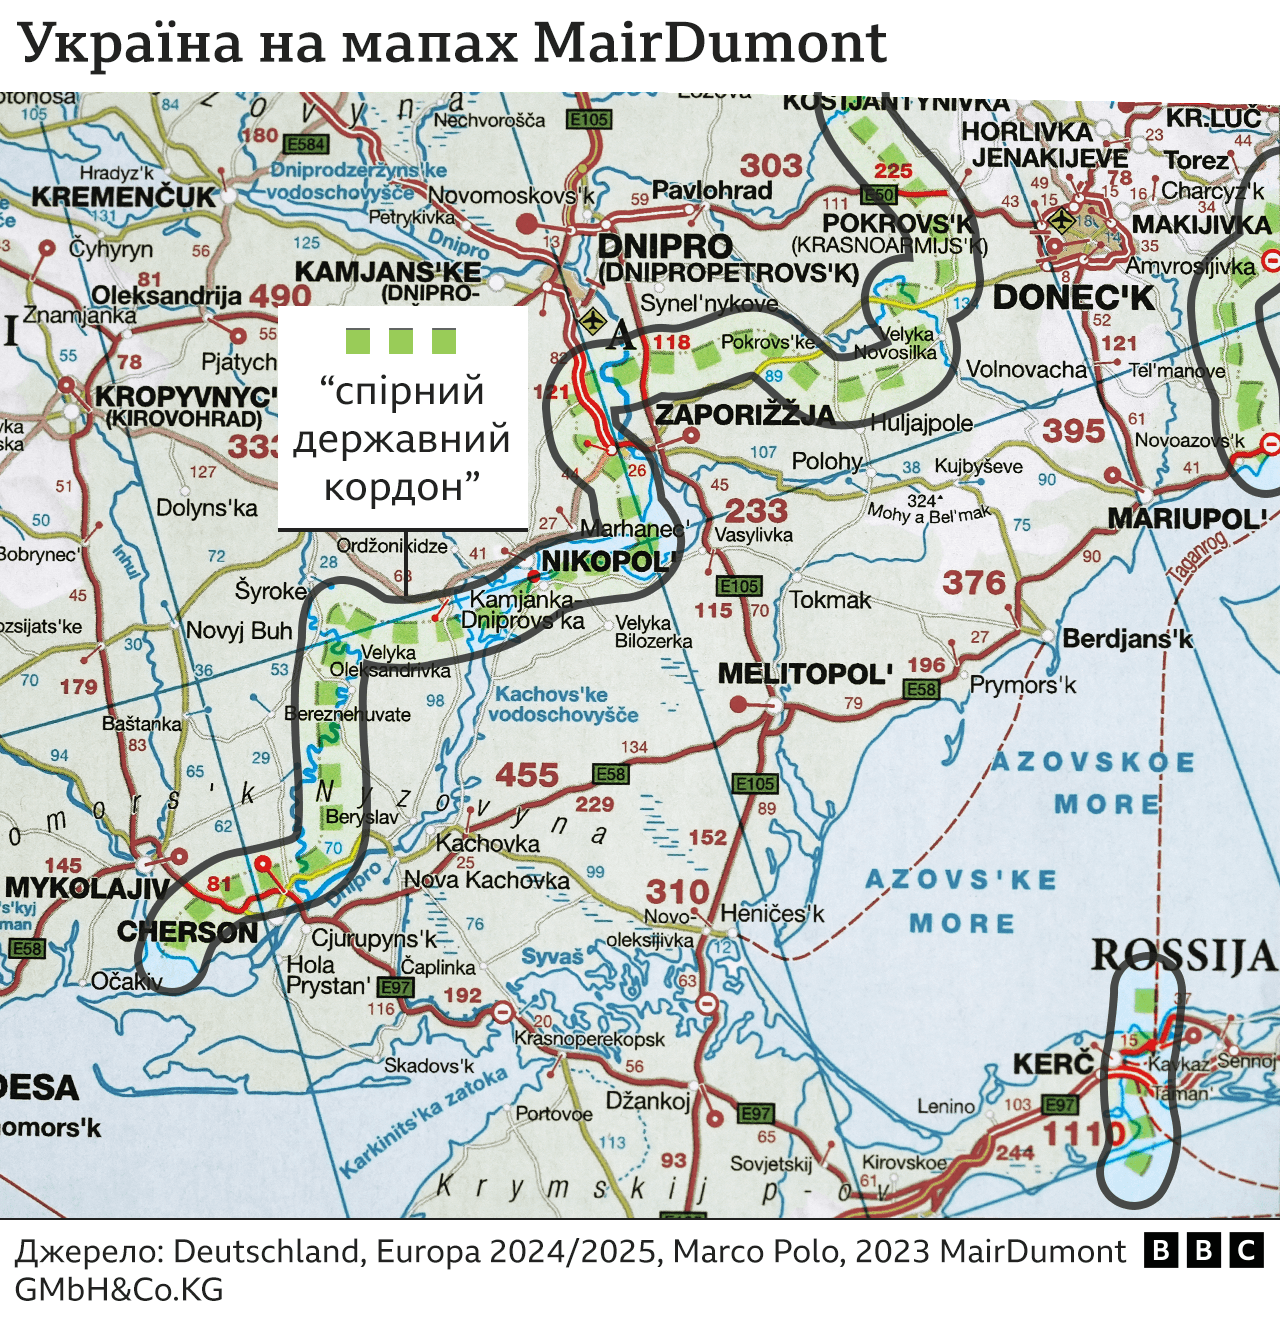 Запоріжжя і Херсон - спірна територія? Проросійські мапи - на європейських полицях